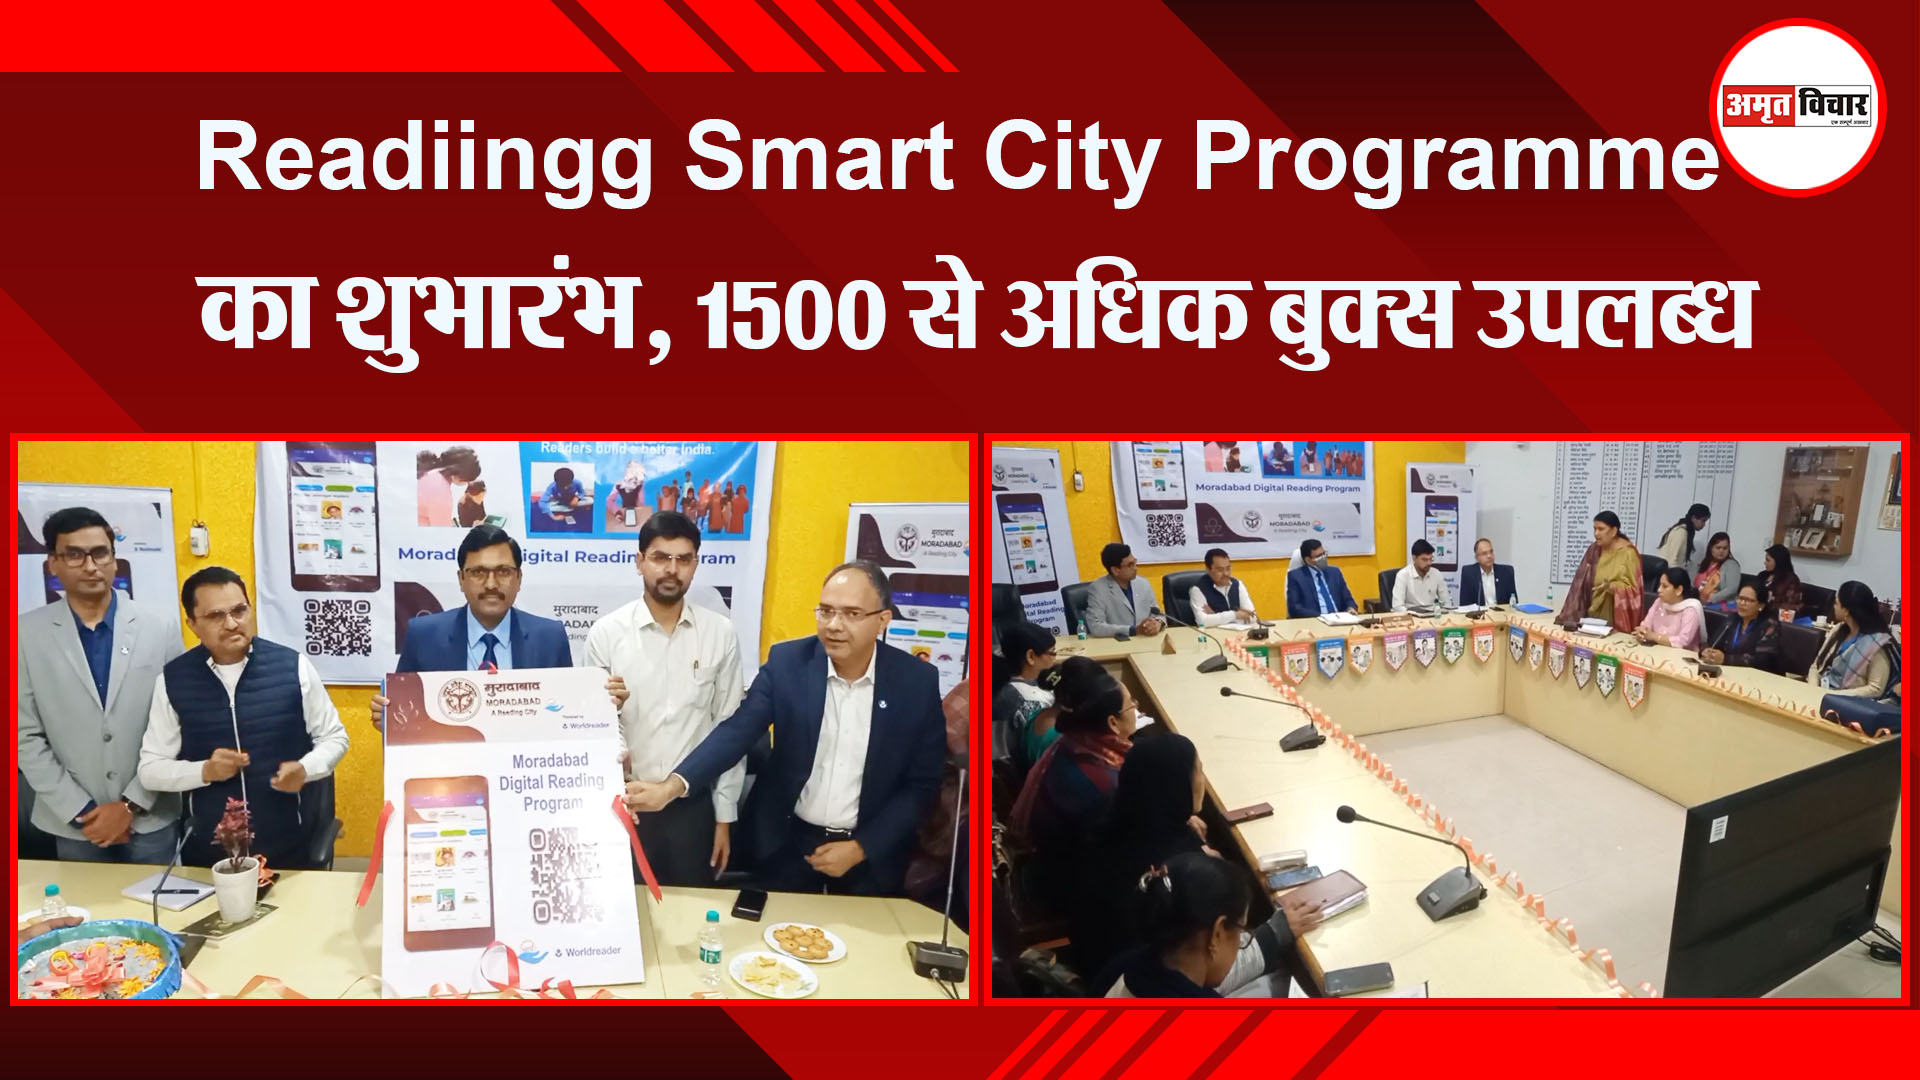 मुरादाबाद: Reading Smart City Programme का शुभारंभ, 1500 से अधिक बुक्स उपलब्ध